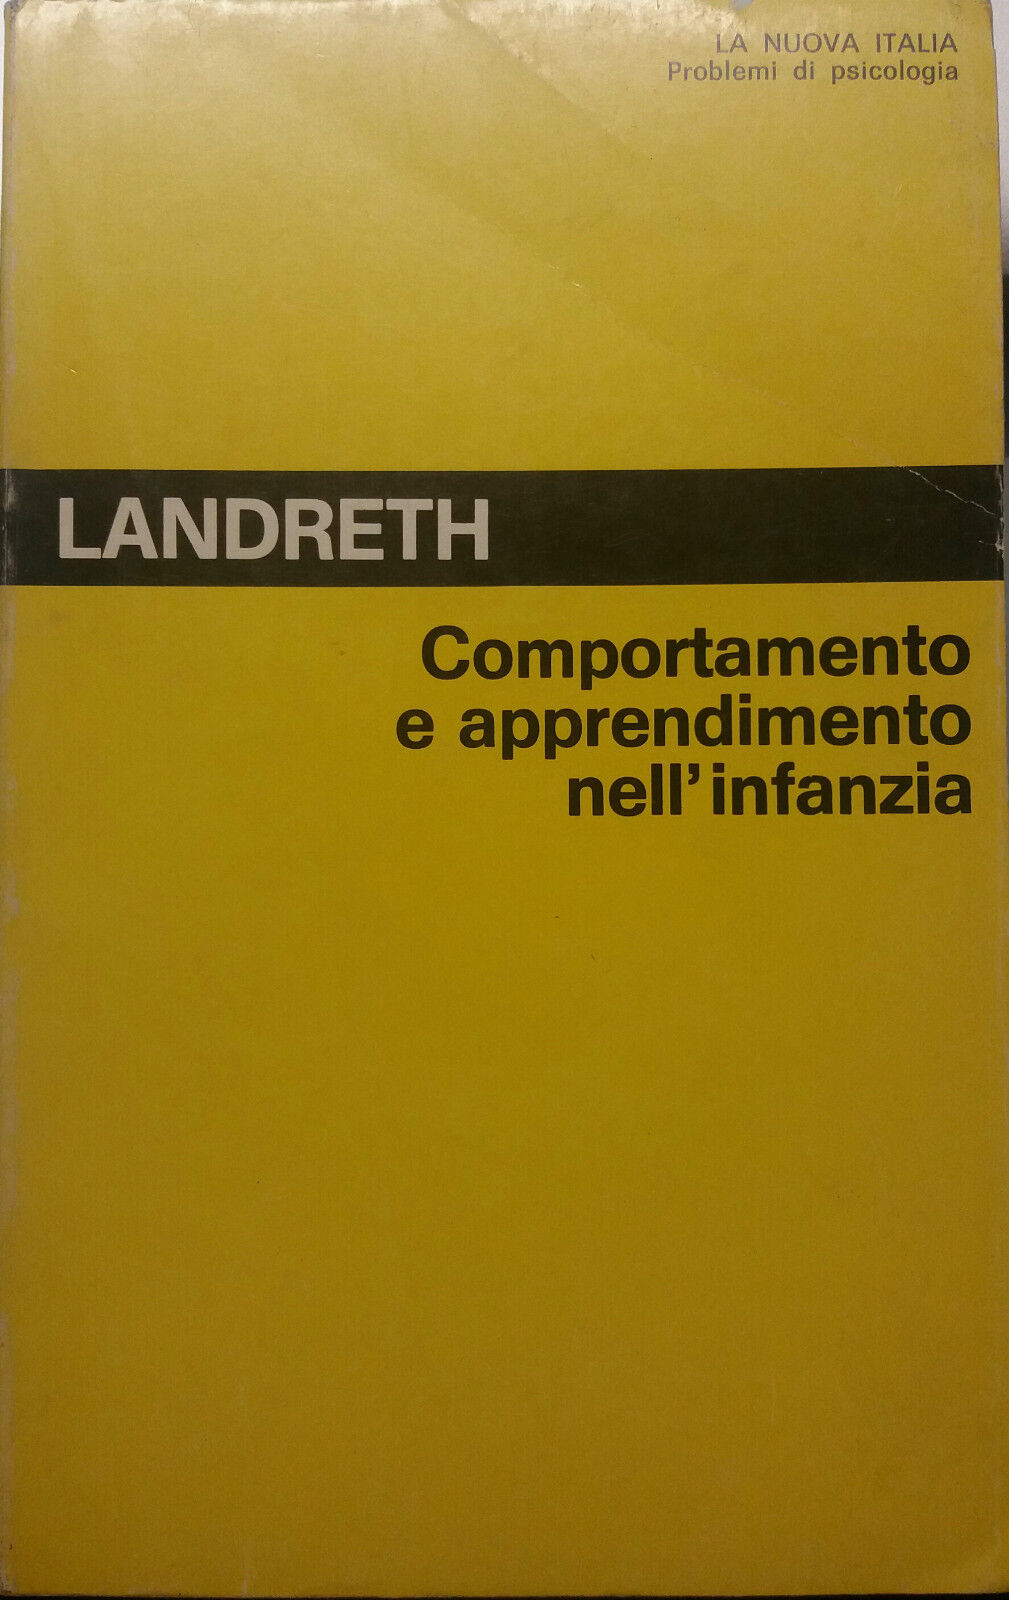 Comportamento e apprendimento nell'infanzia - Landreth - La Nuova Italia-1982-G